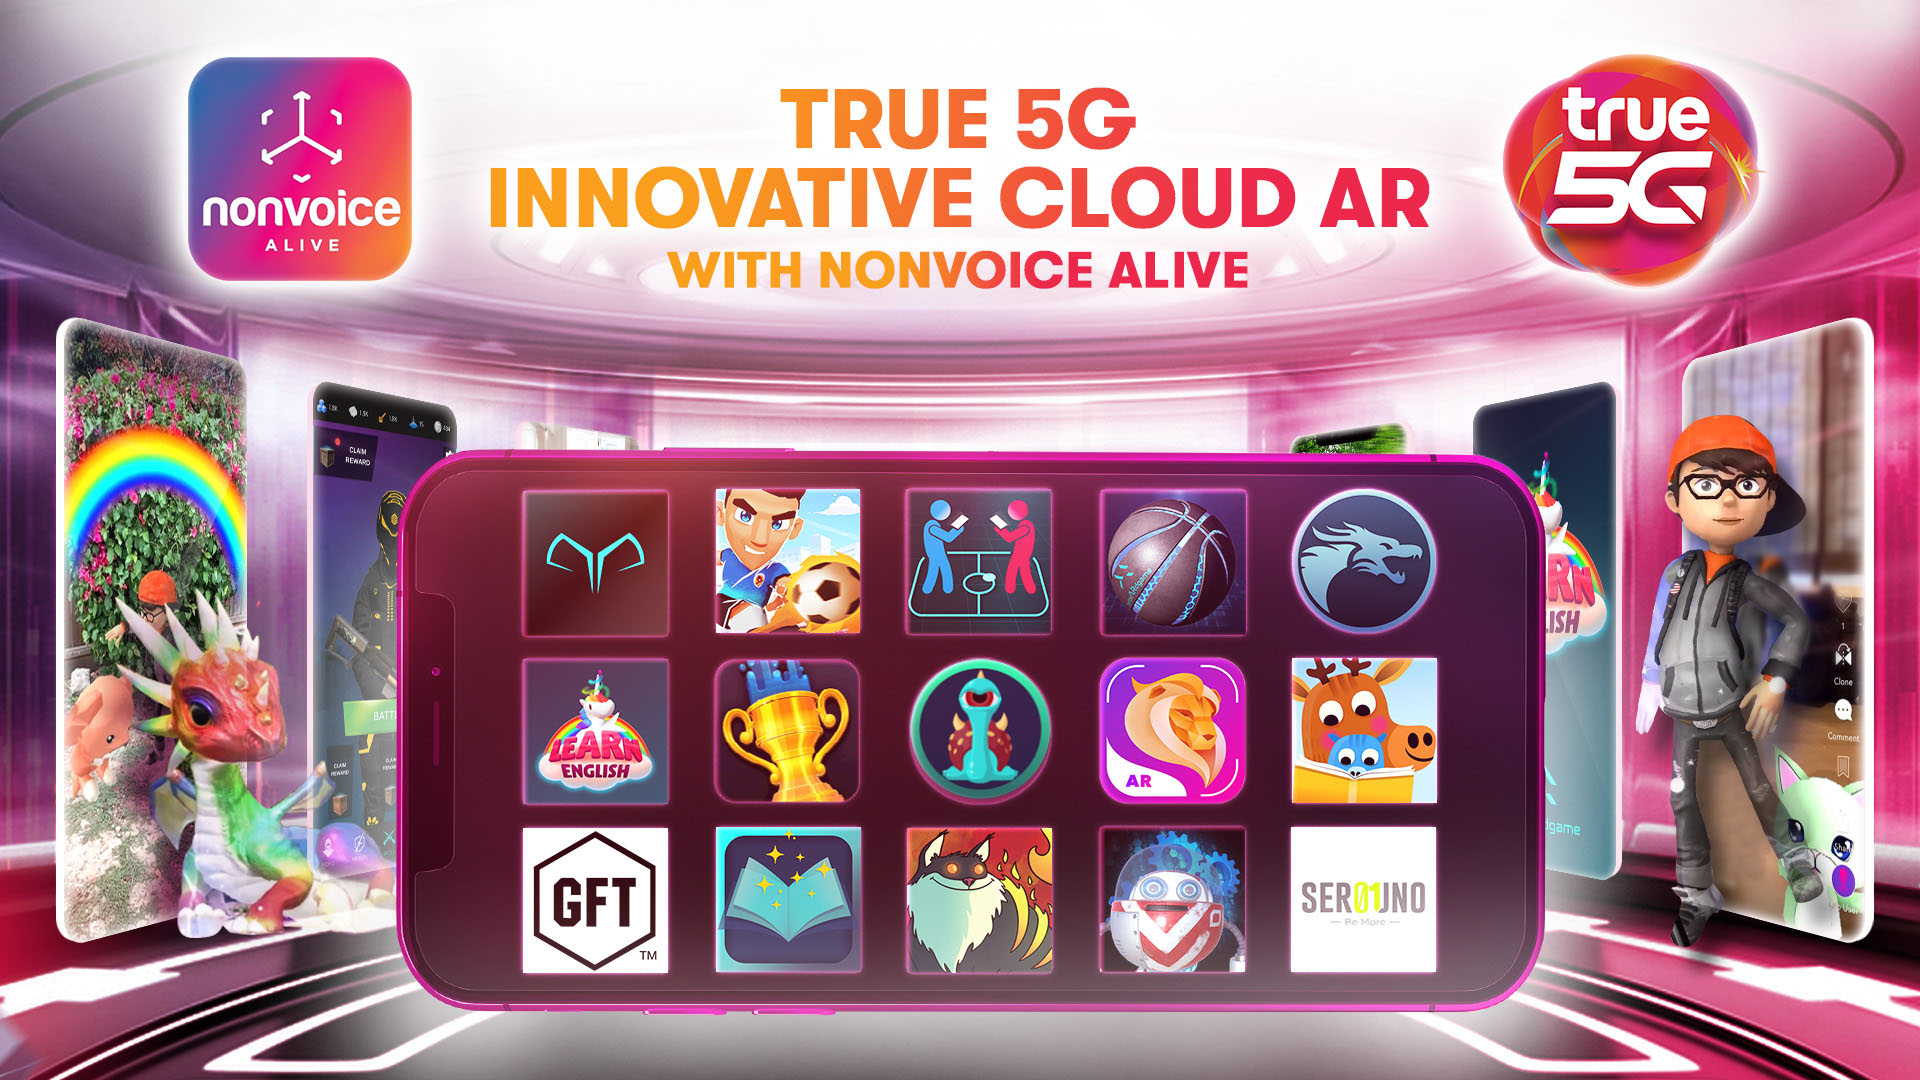 ทรู 5G ผนึกพันธมิตรระดับโลก Nonvoice Alive เปิดตัว “True 5G Innovative Cloud AR with Nonvoice Alive”